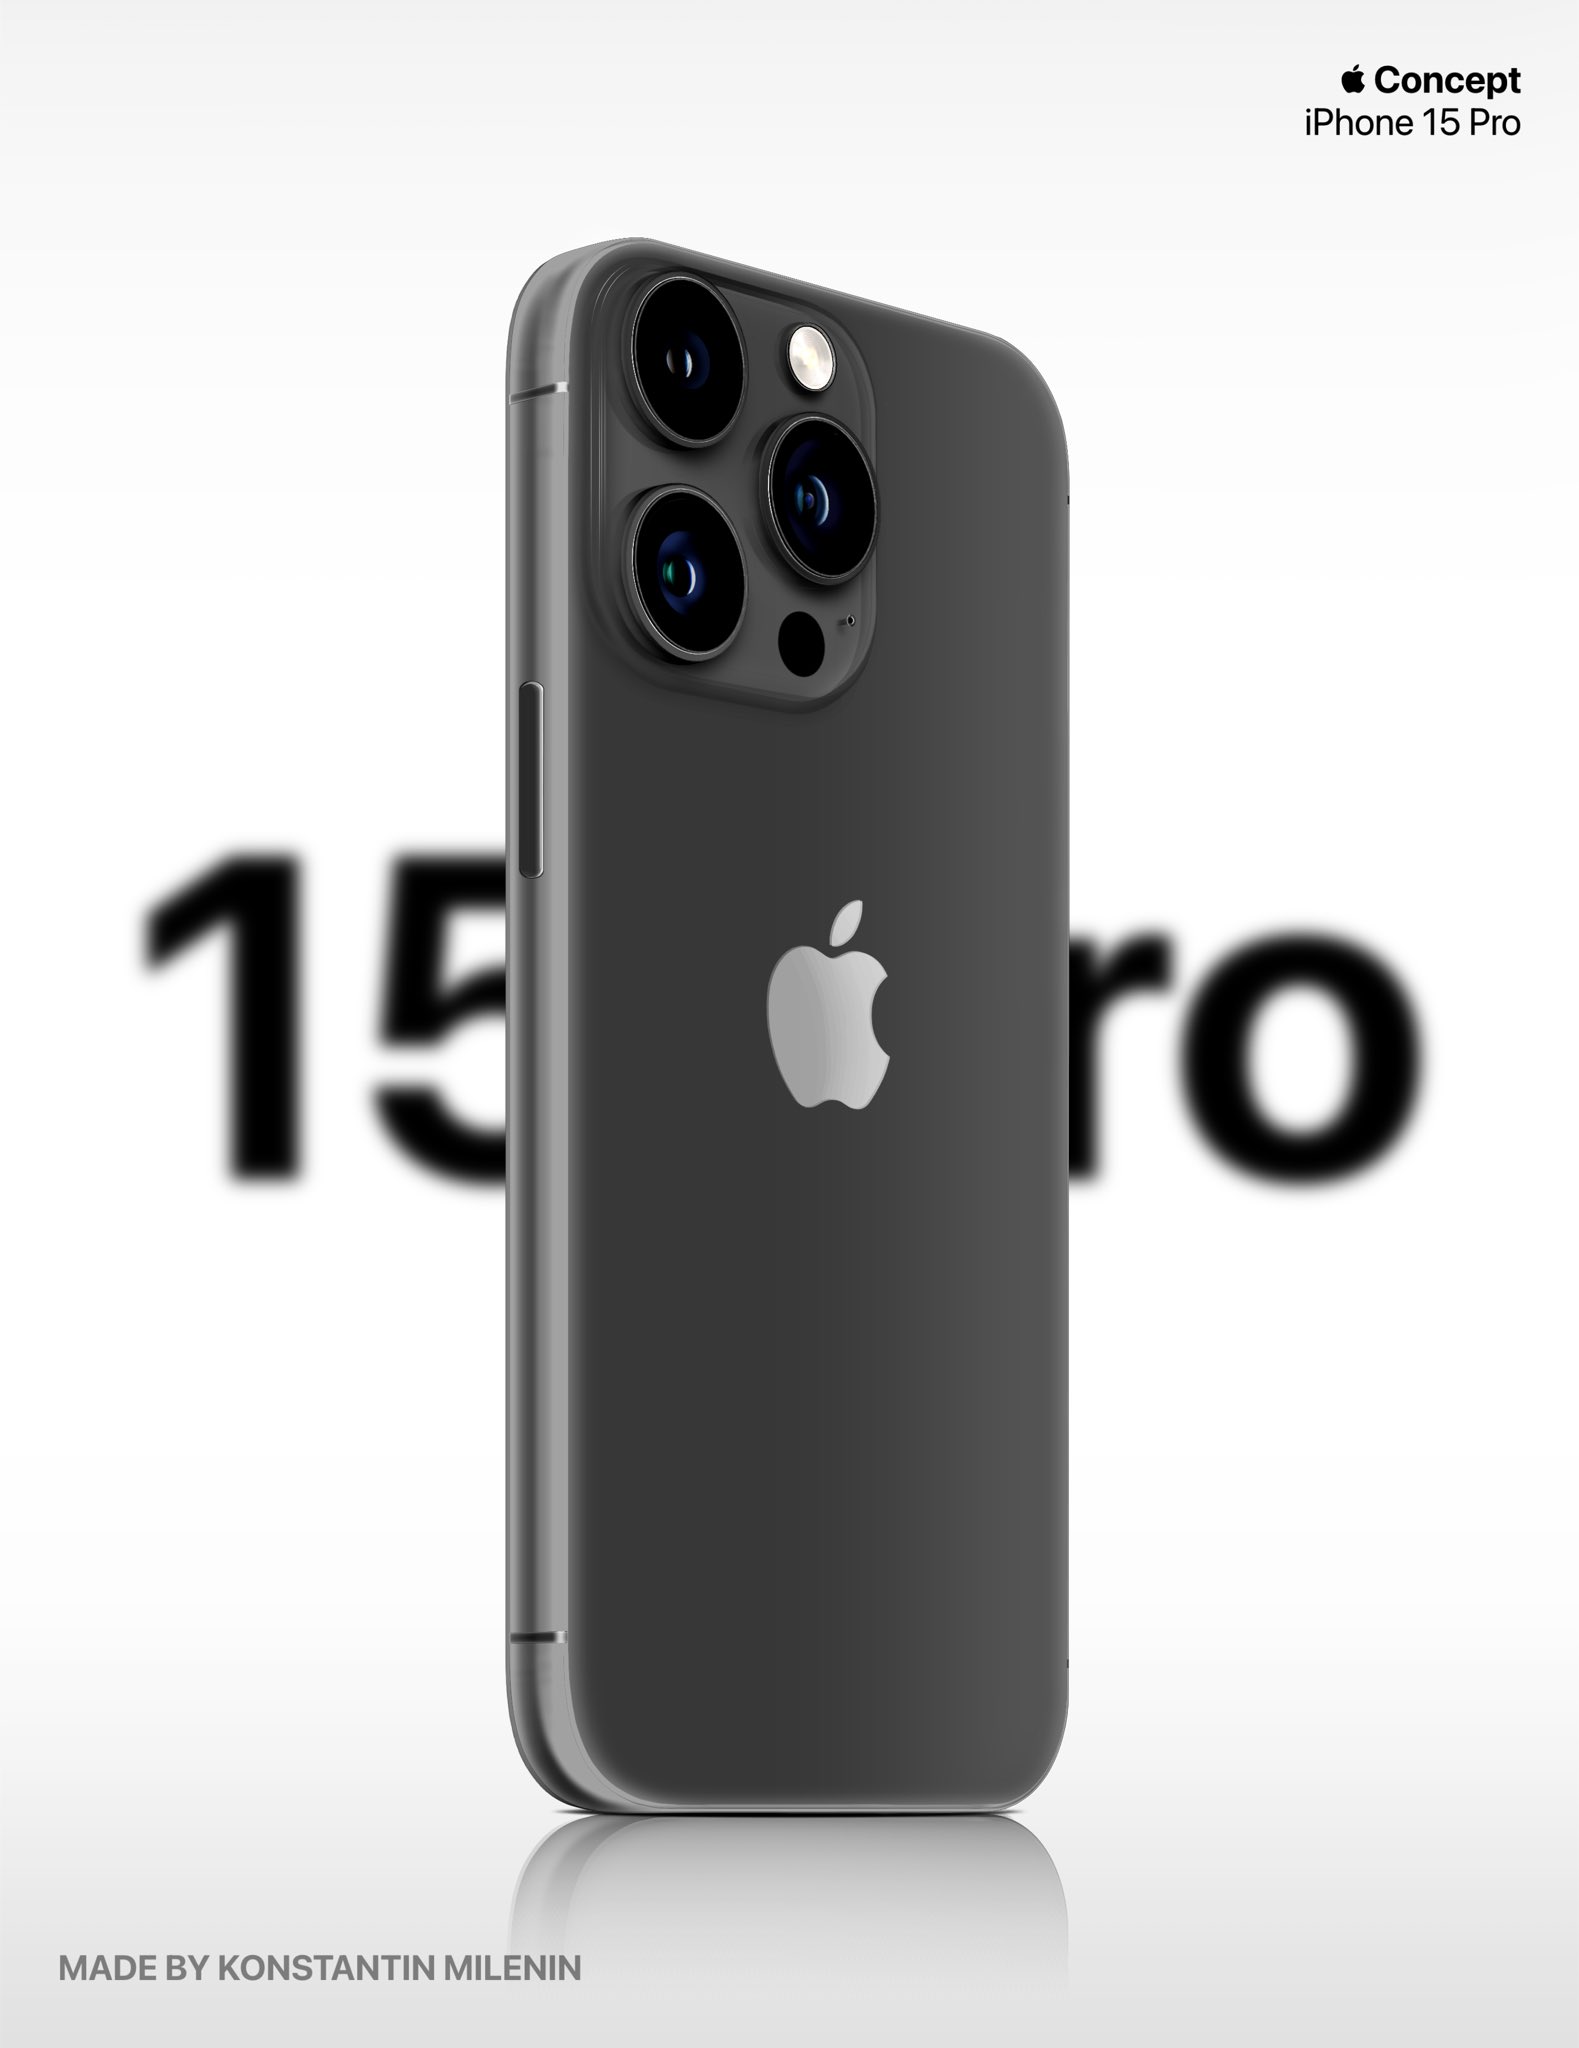 Đây là iPhone 15 Pro: Ngoại hình khác lạ với thiết kế bo cong, màu đỏ đặc biệt ấn tượng! - Ảnh 5.